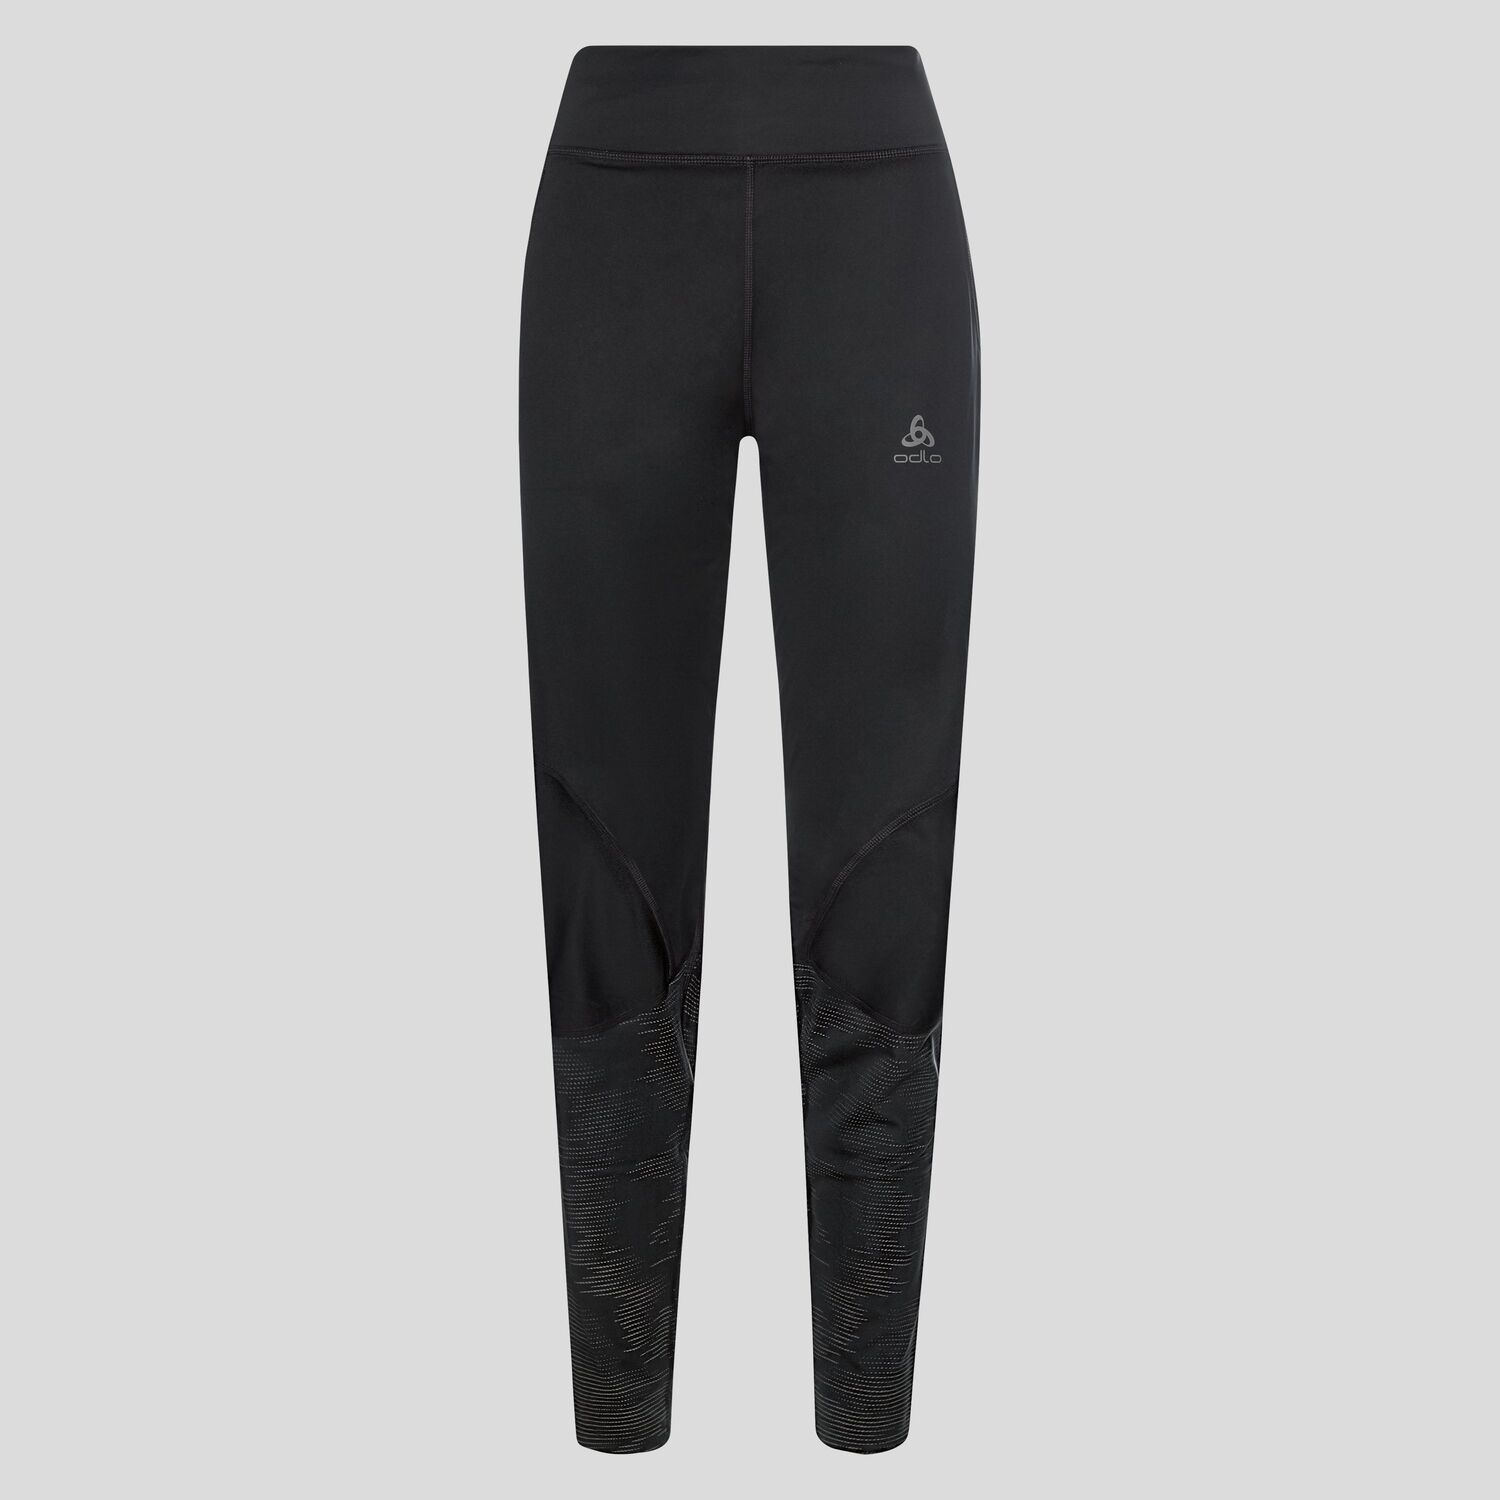 Odlo Zeroweight Warm Reflective - Running leggings - Women's | Hardloop